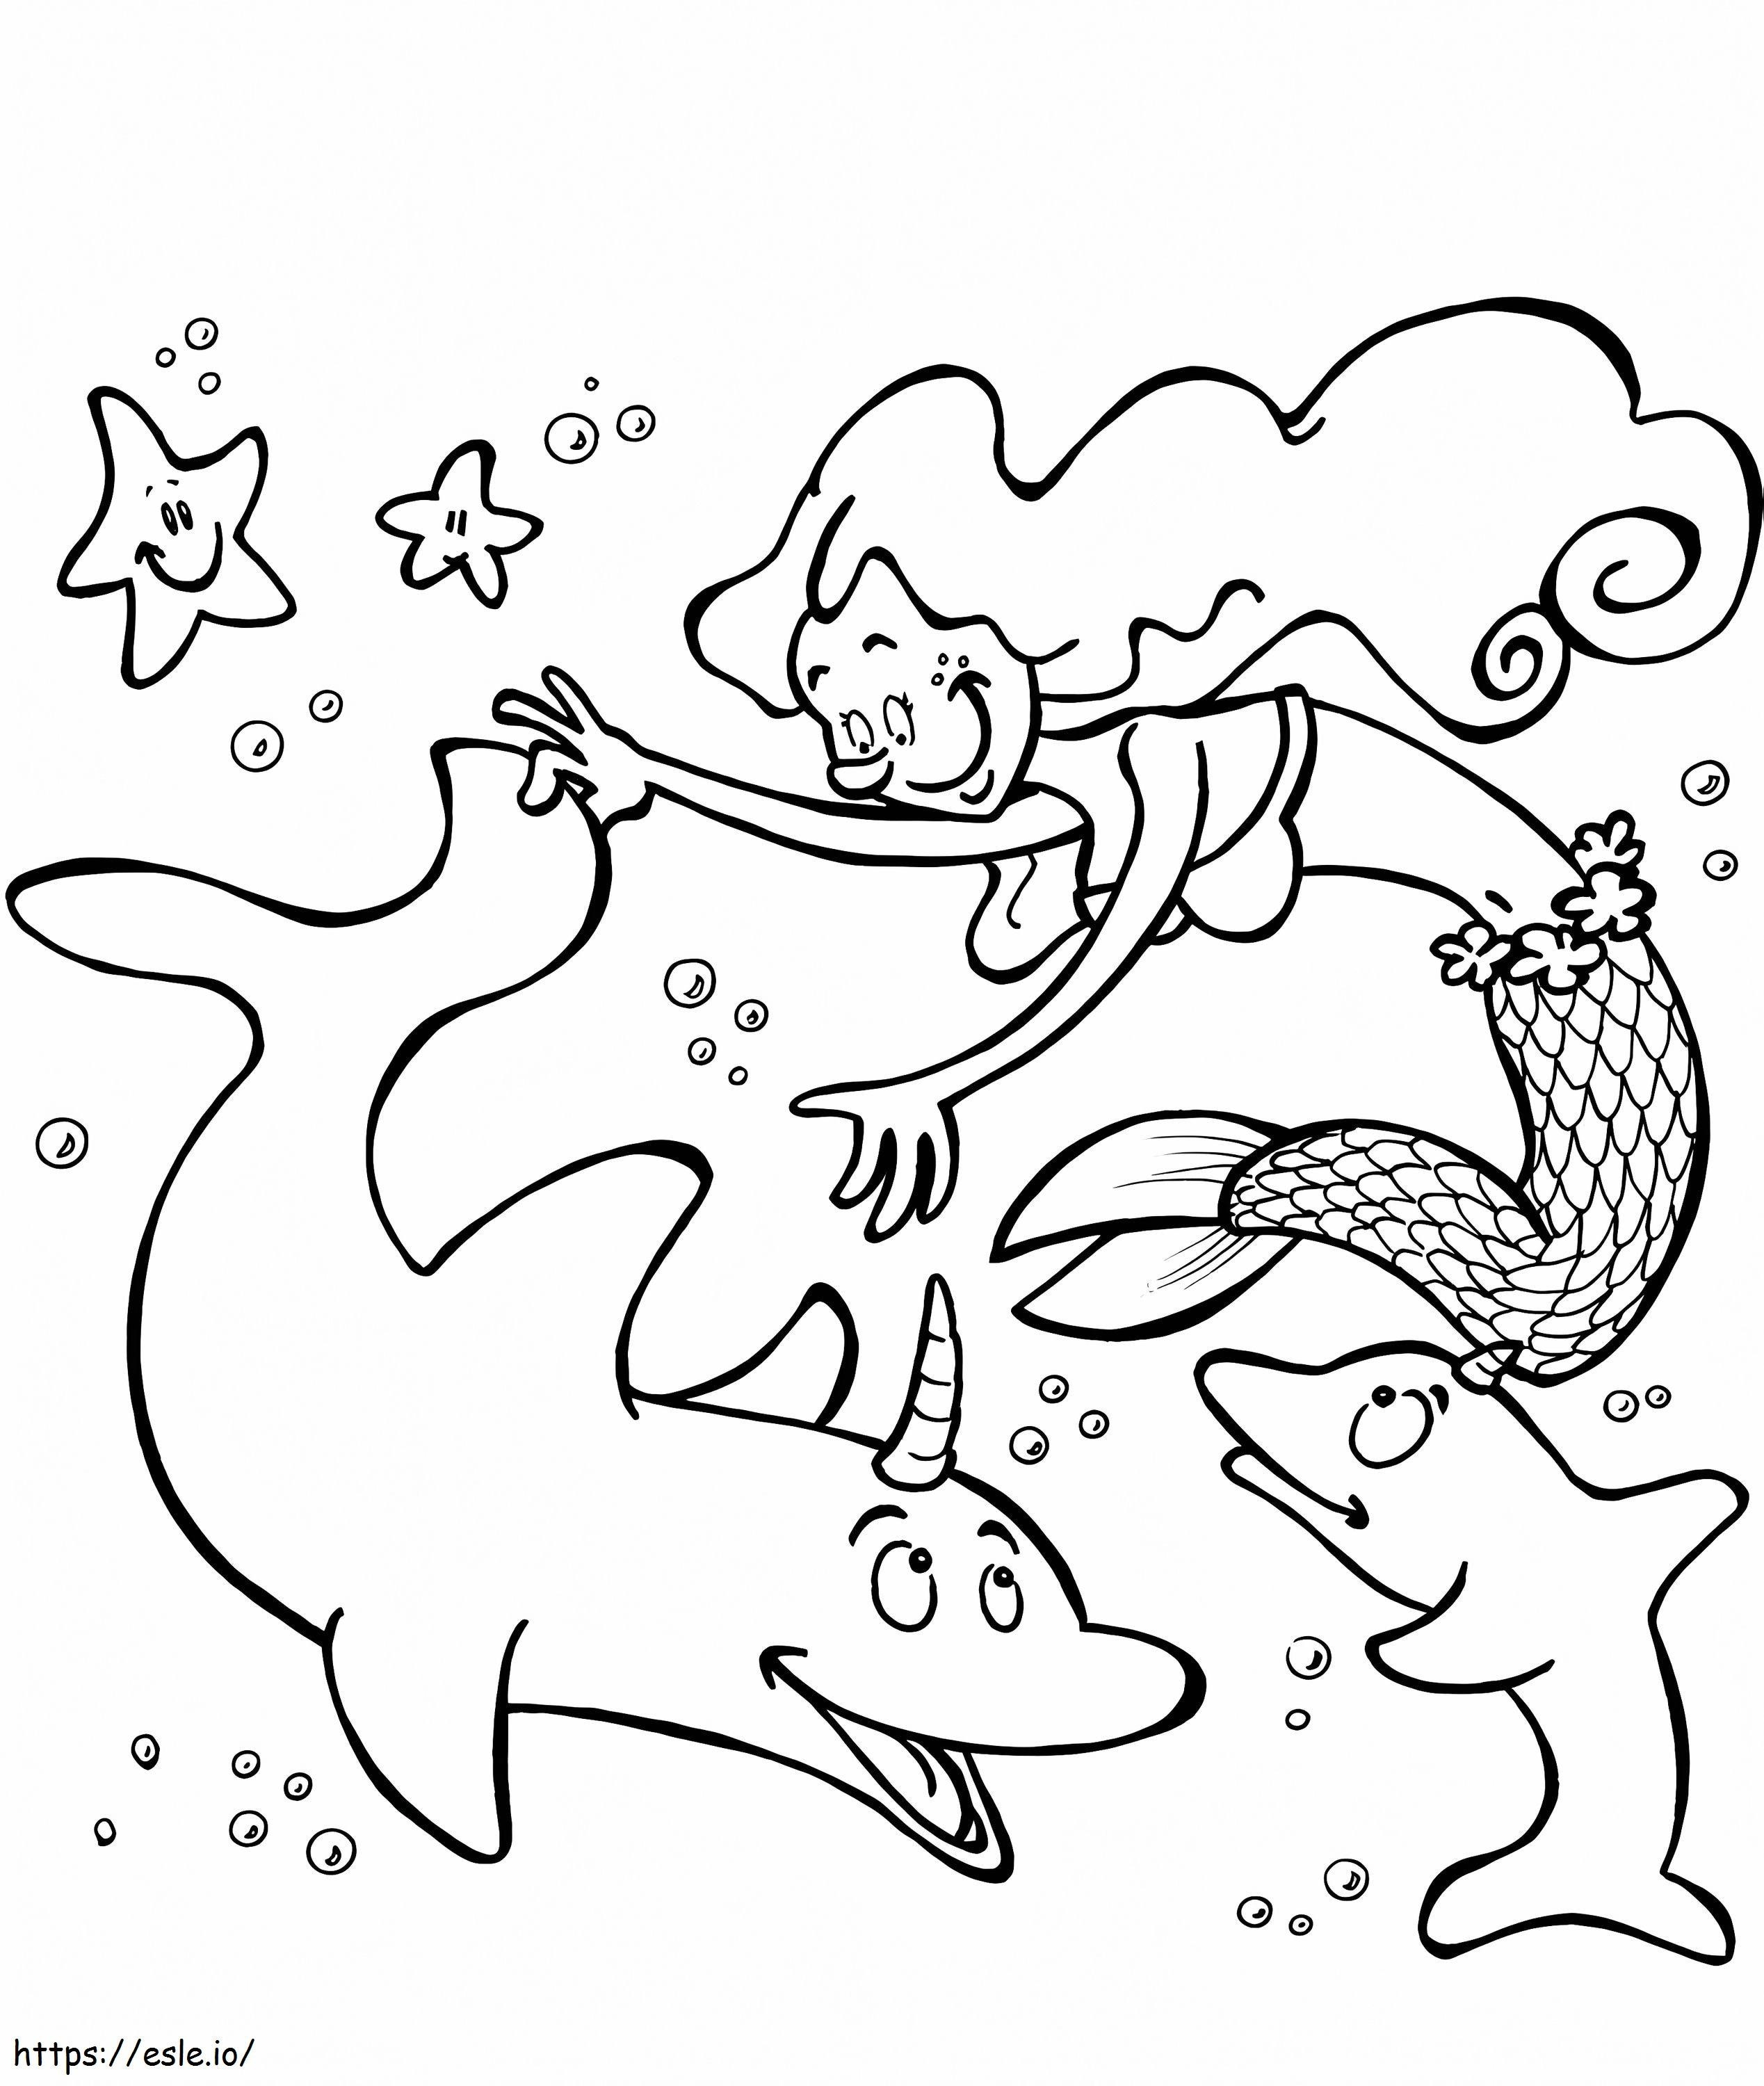 Meerjungfrau und Delphin-Einhorn ausmalbilder